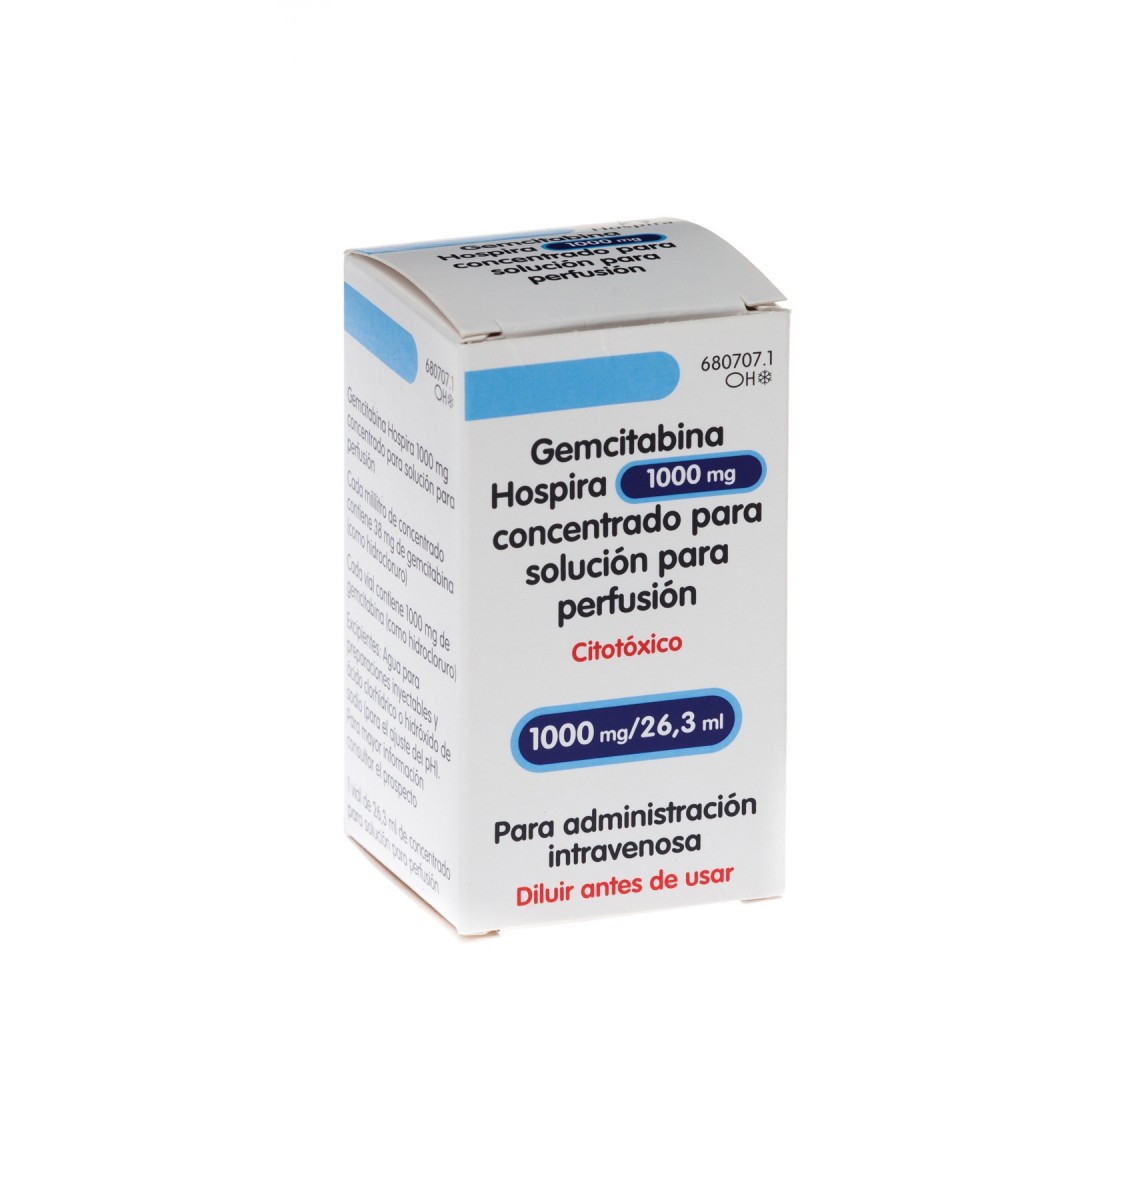 GEMCITABINA HOSPIRA 1000 mg CONCENTRADO PARA SOLUCION PARA PERFUSION ,  1 vial de 26,3 ml fotografía del envase.